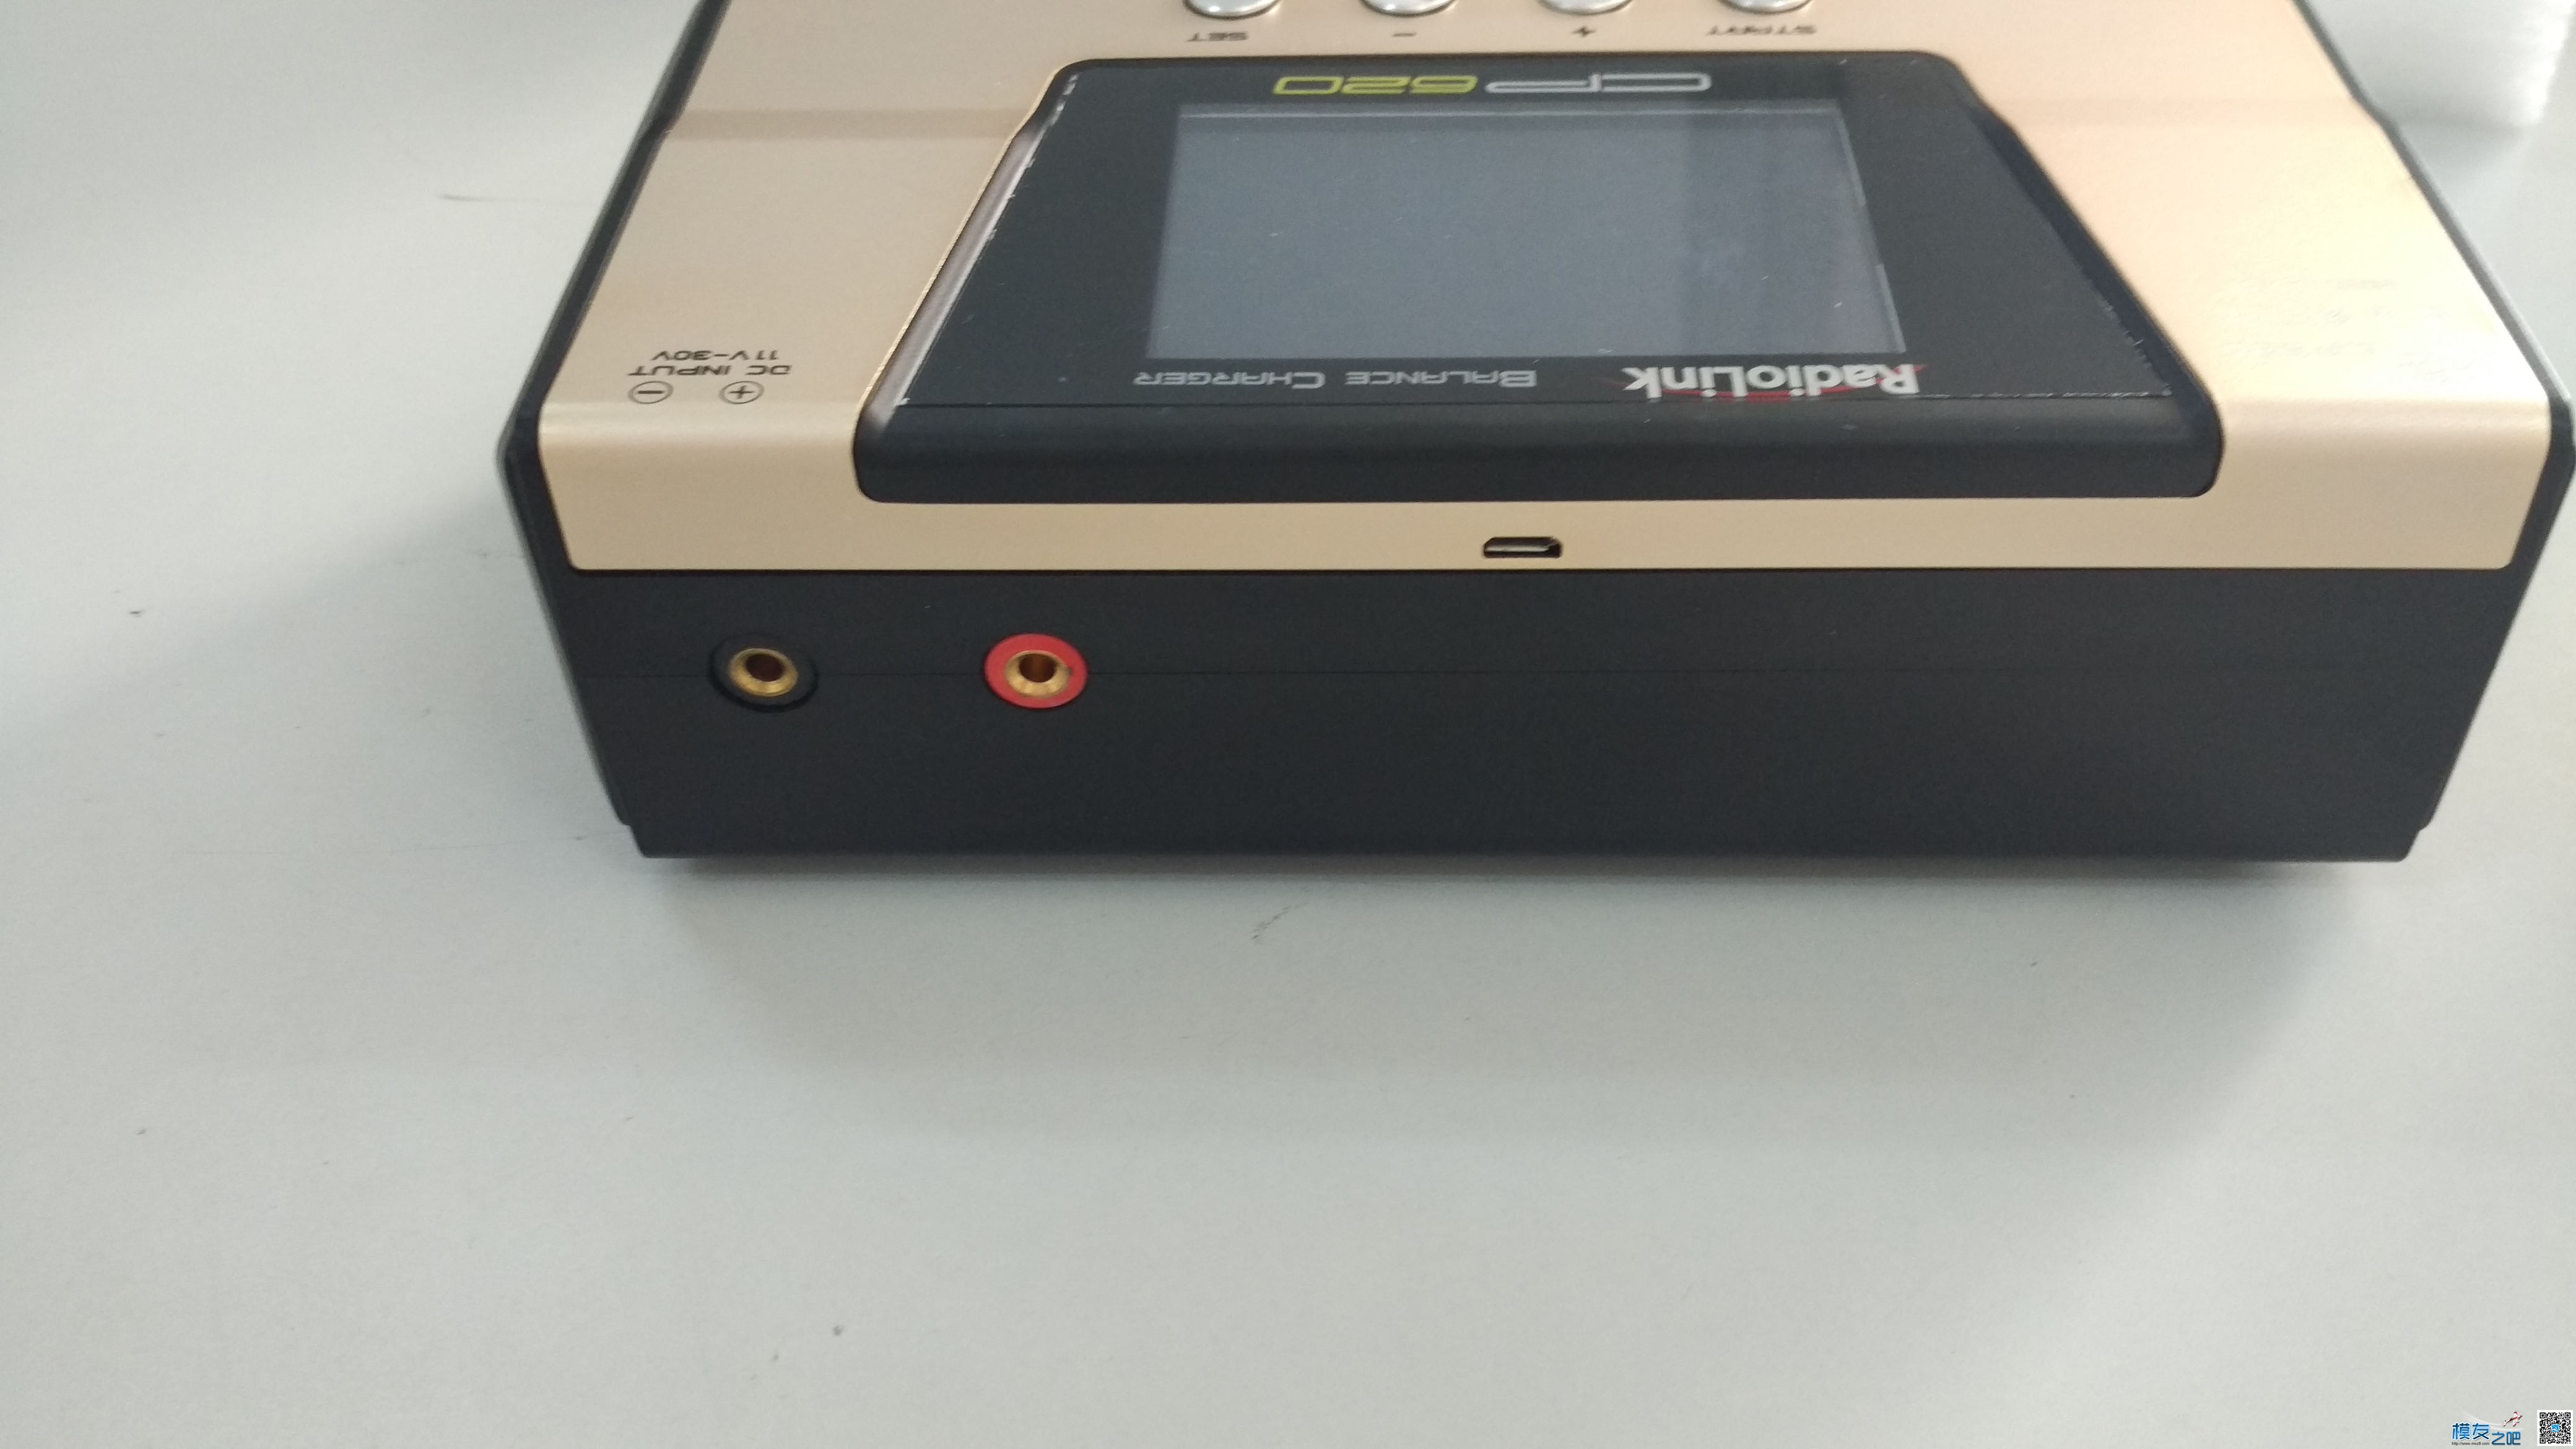 乐迪CP620开箱  评测   使用教程 包装盒,充电器,遥控器,电源线,纪念版 作者:云端纸飞机 8946 